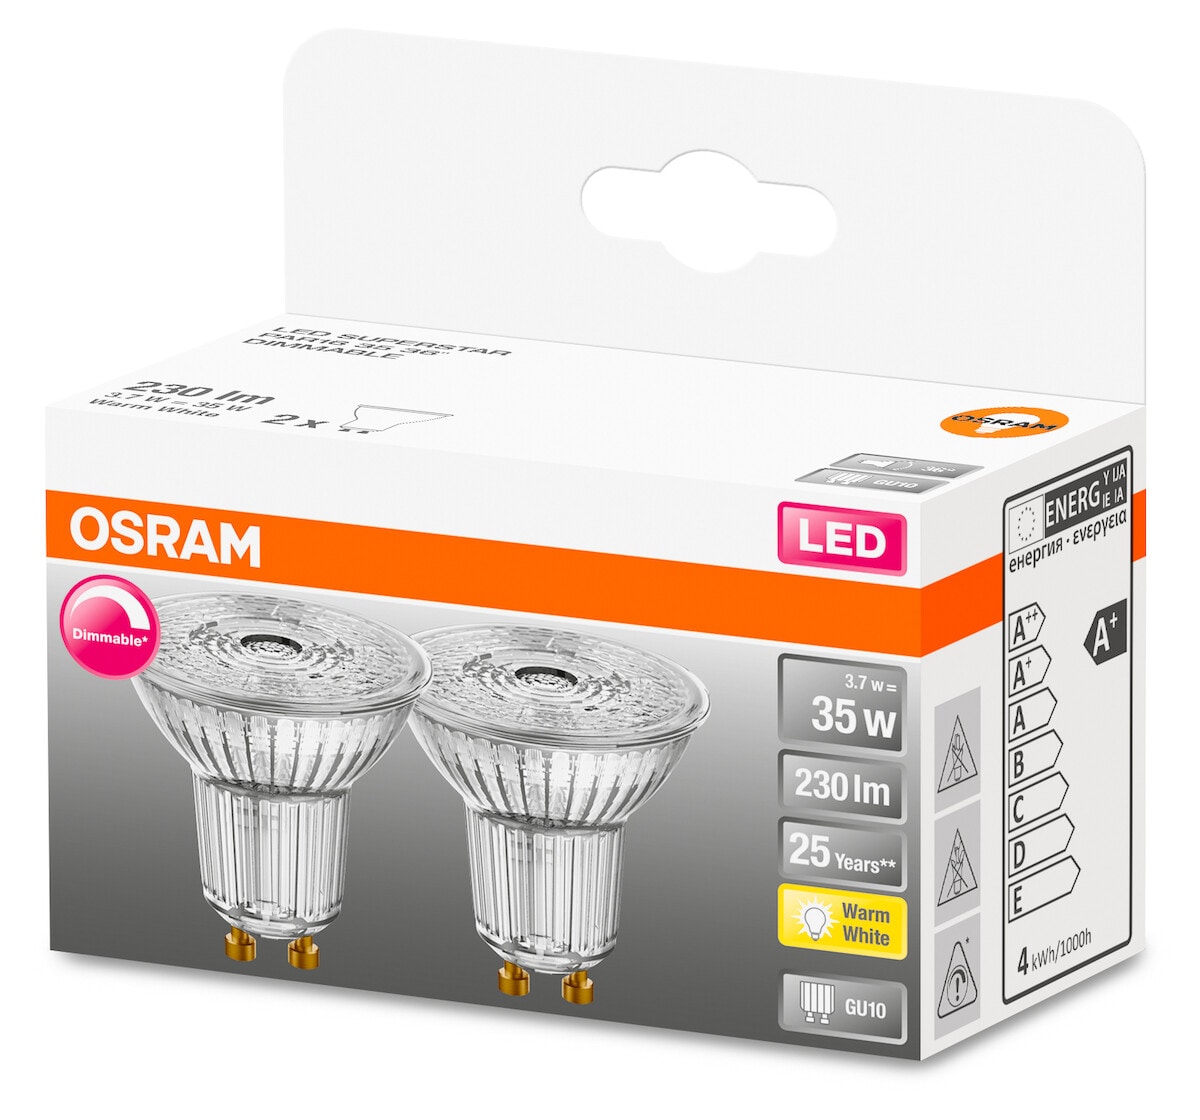 Dimbar LED GU10 Osram, 2-pack